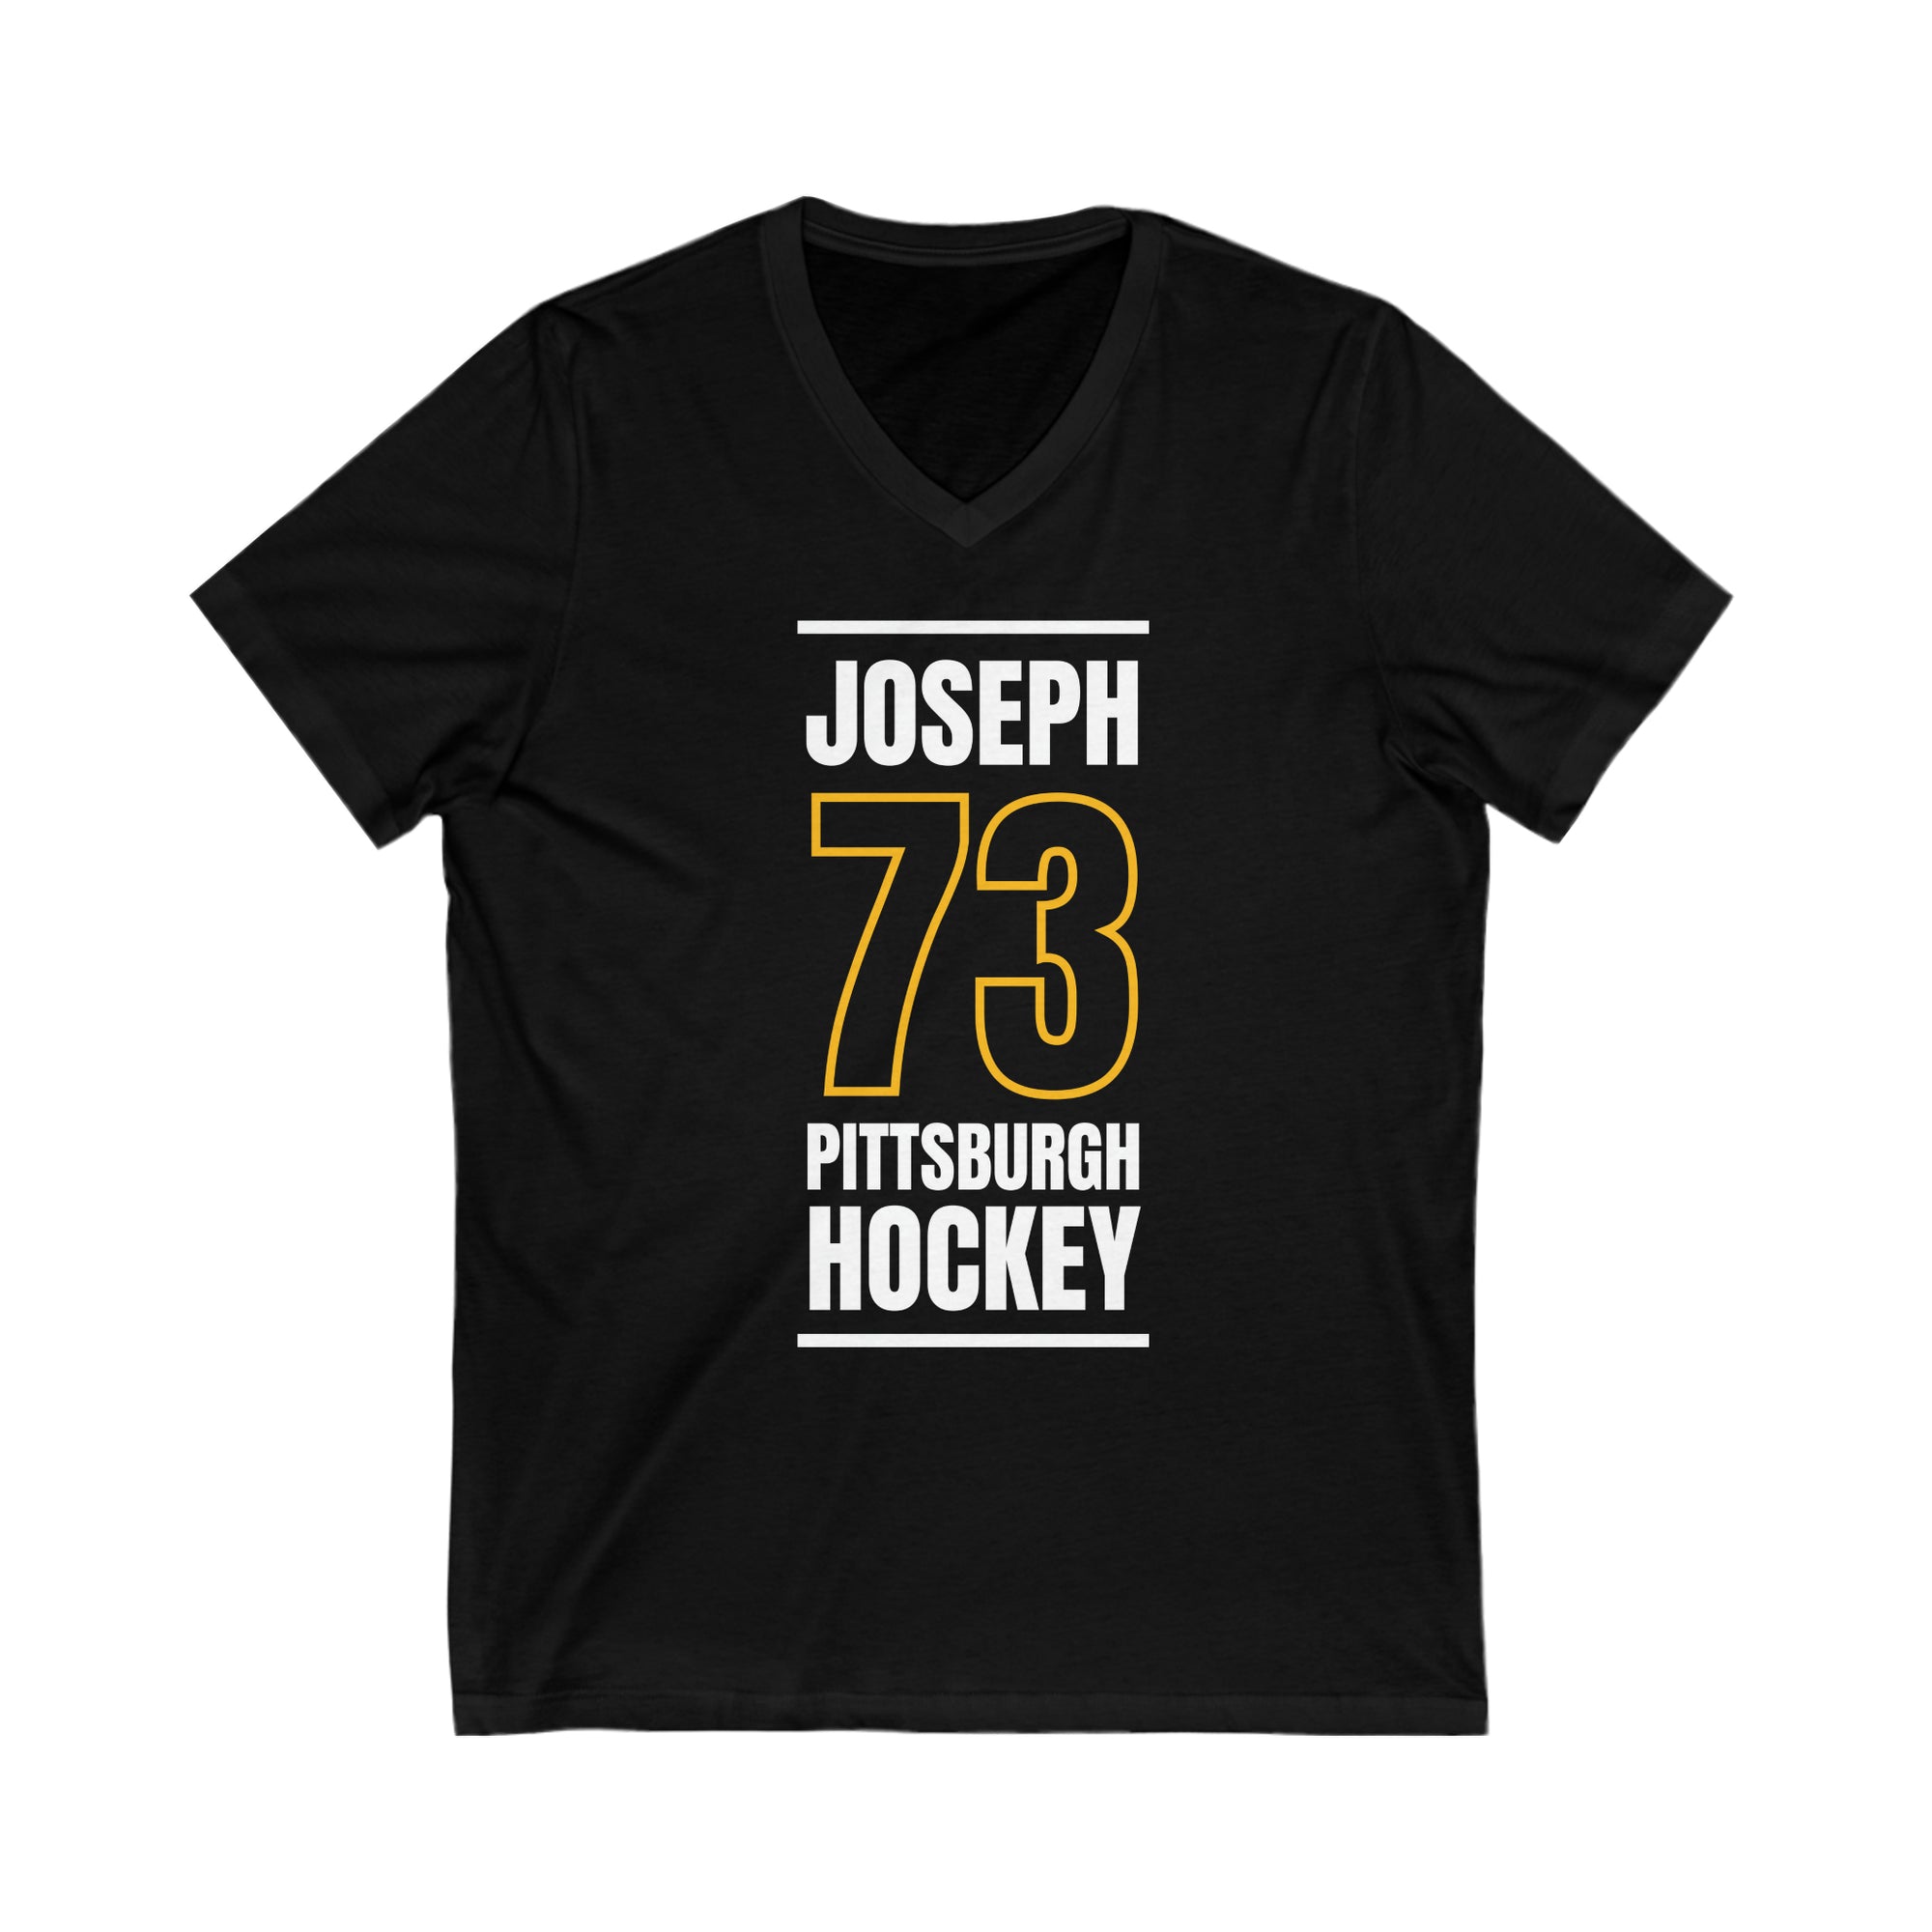 Joseph 73 Pittsburgh Hockey Black Vertical Design Unisex V-Neck Tee